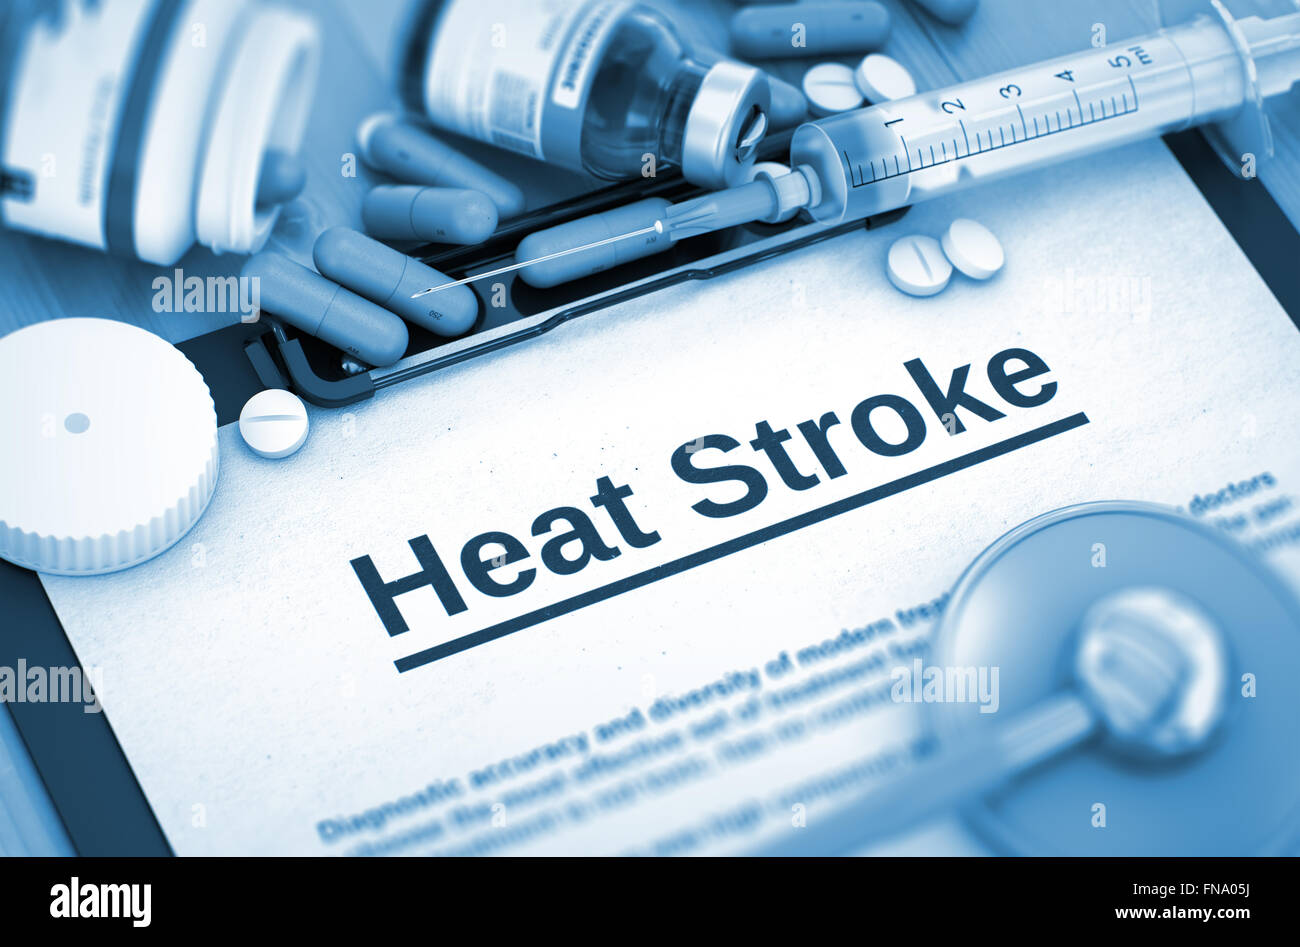 Heat Stroke Diagnosis. Medical Concept. Stock Photo